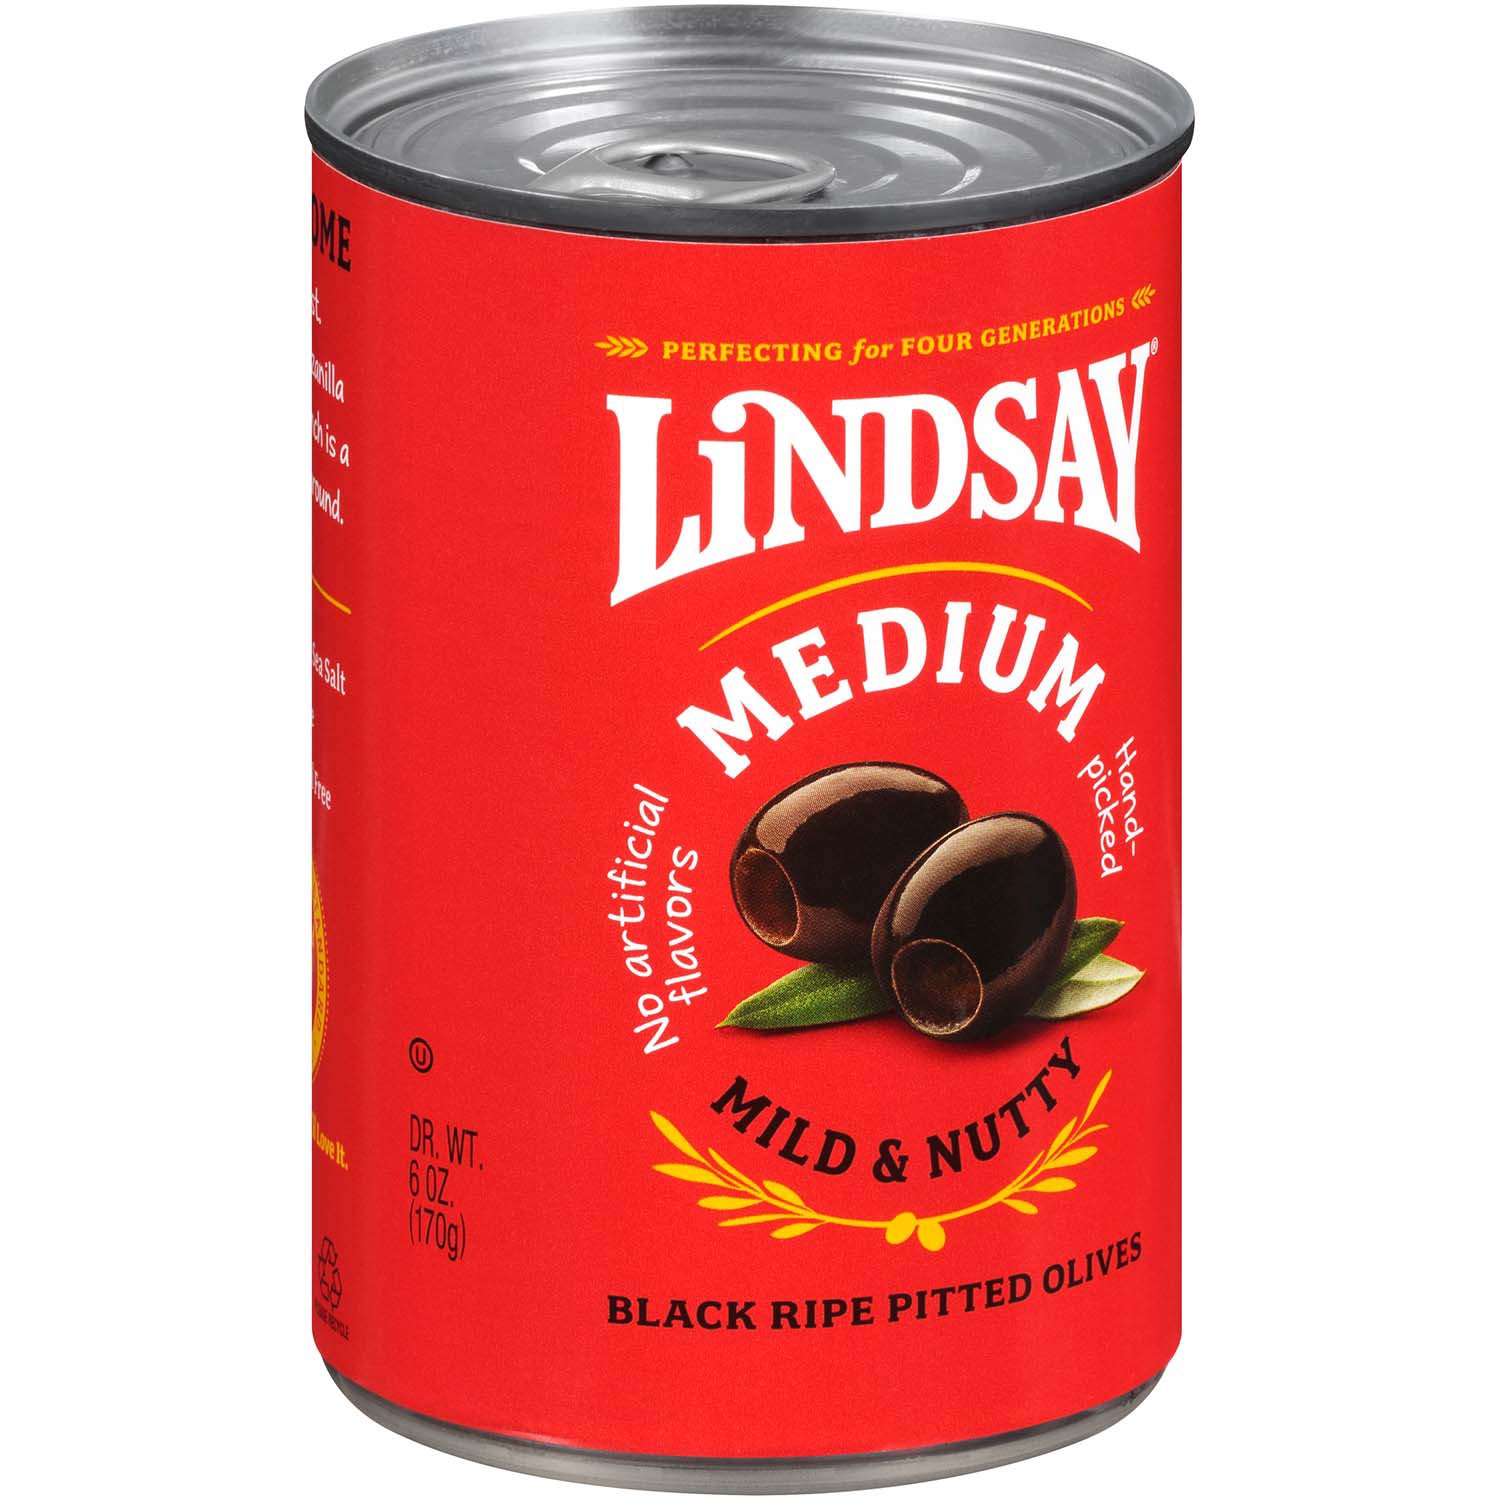 Lindsay Medium Black Ripe Pitted Olives